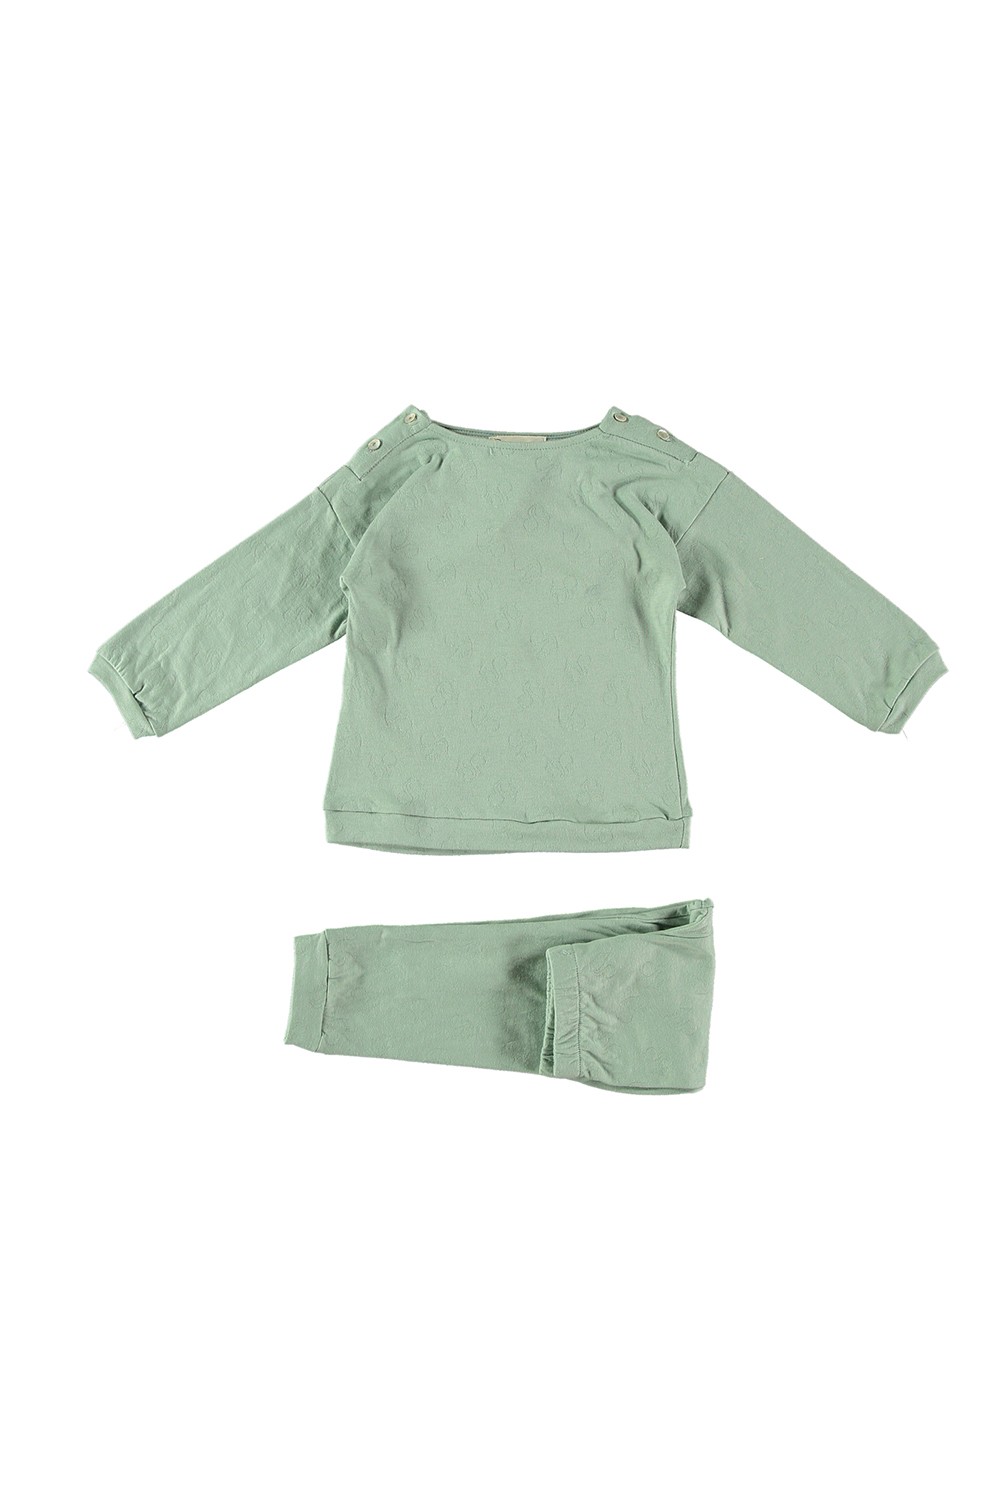 pyjama garçon dandy coton bio vert amande